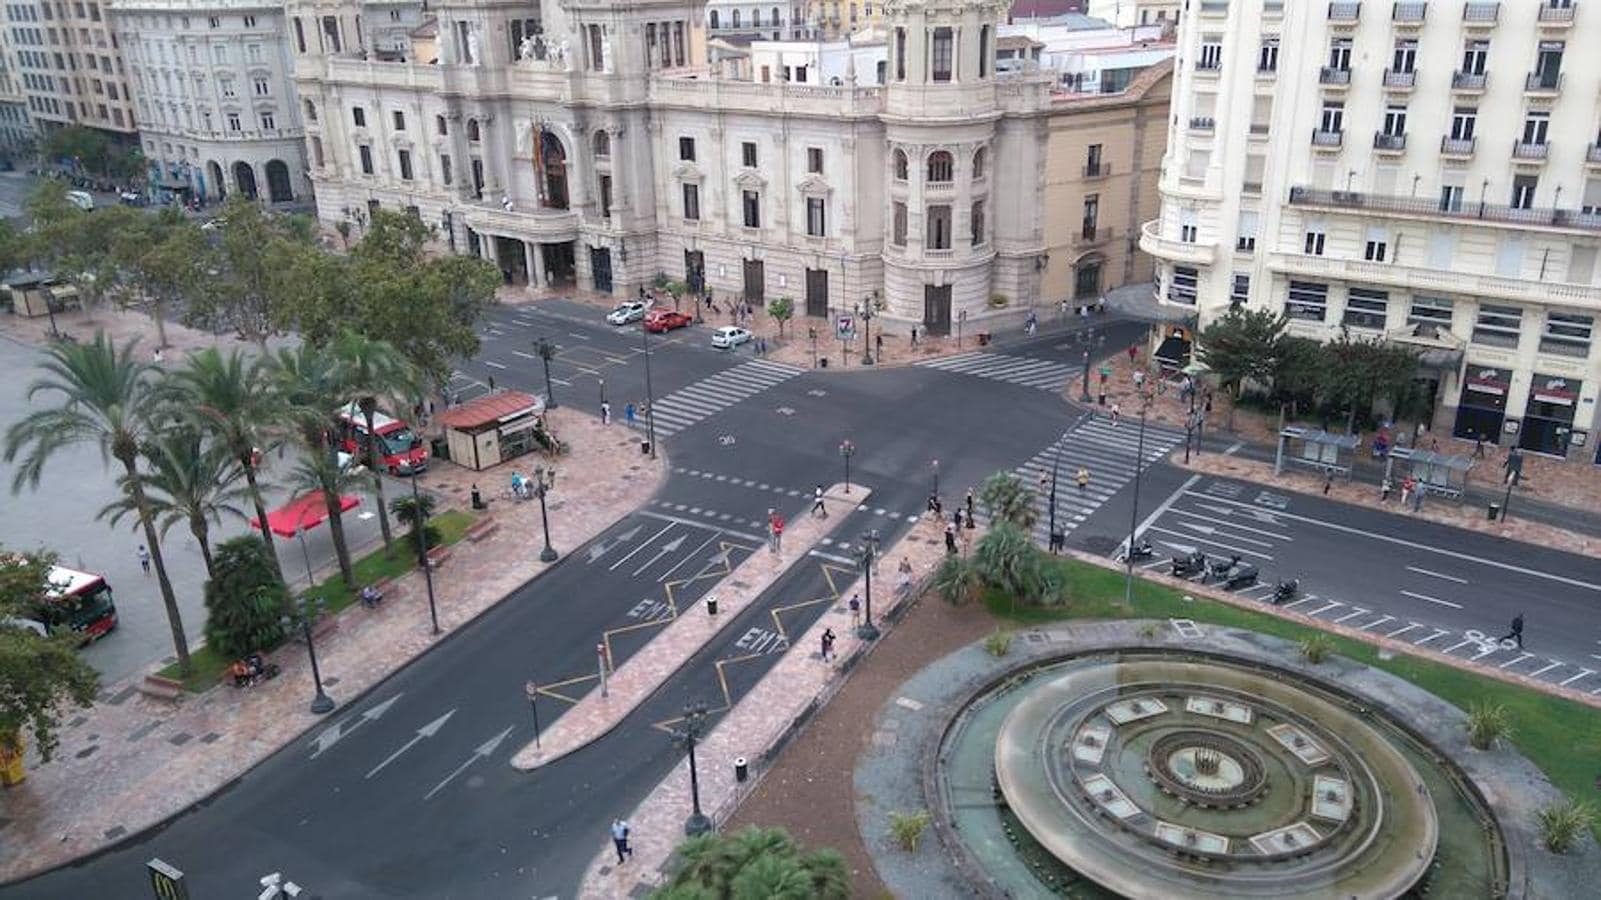 La ciudad de Valencia se ha tenidos que acostumbrar a los días sin coches desde que Joan Ribó, un ferviente defensor del uso de la bicicleta, tomó la vara de mando. La imagen muestra la Plaza del Ayuntamiento de Valencia completamente vacía